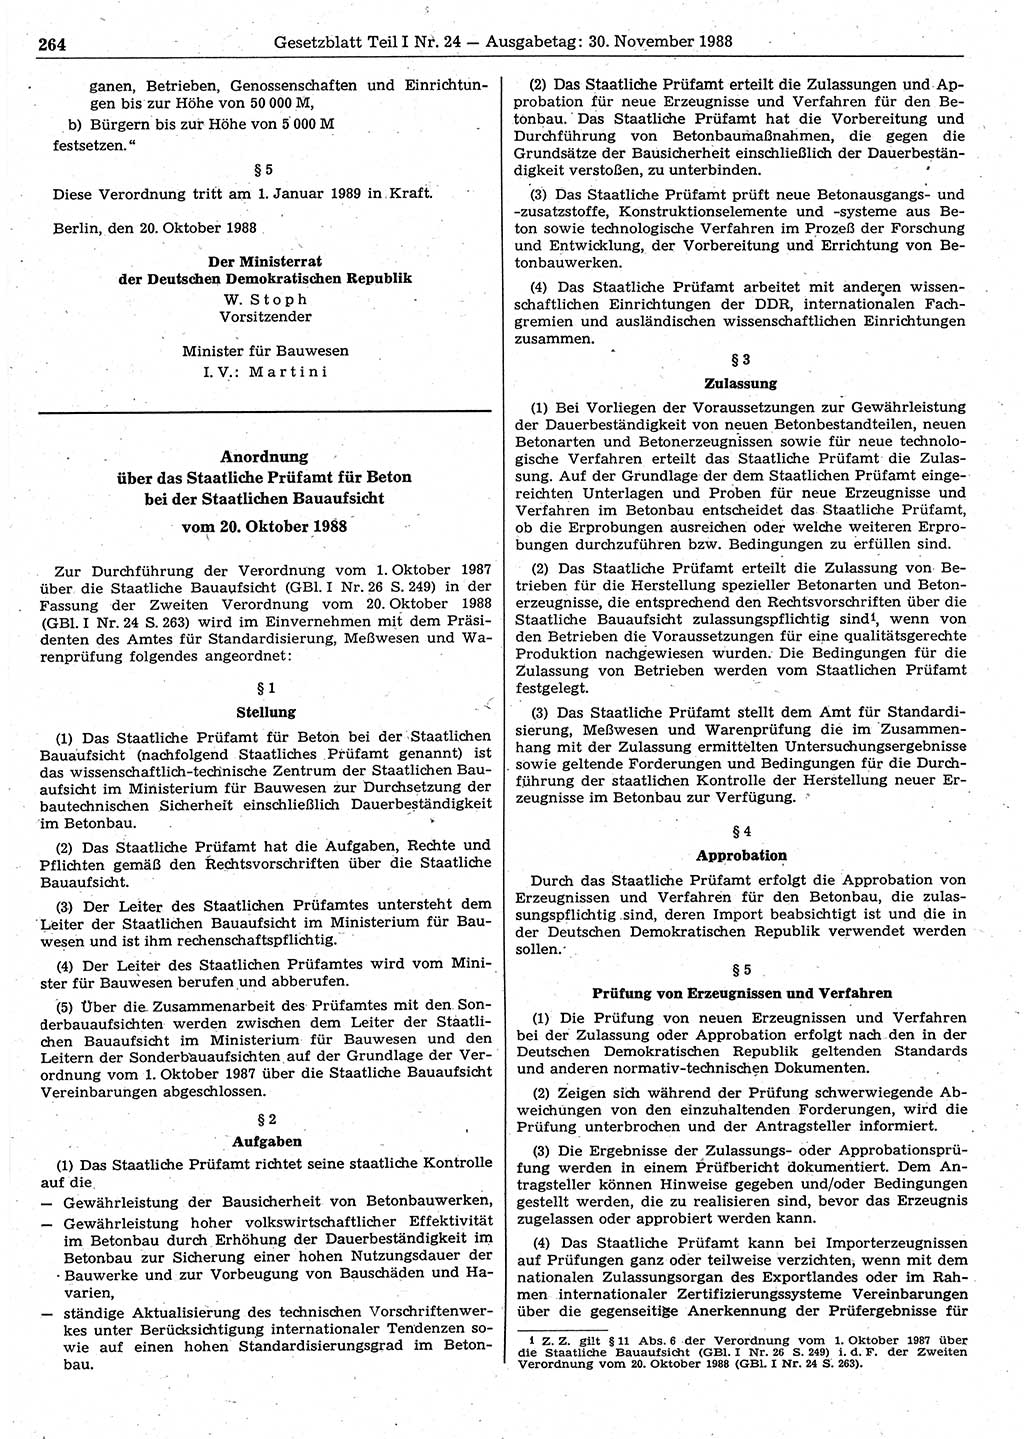 Gesetzblatt (GBl.) der Deutschen Demokratischen Republik (DDR) Teil Ⅰ 1988, Seite 264 (GBl. DDR Ⅰ 1988, S. 264)